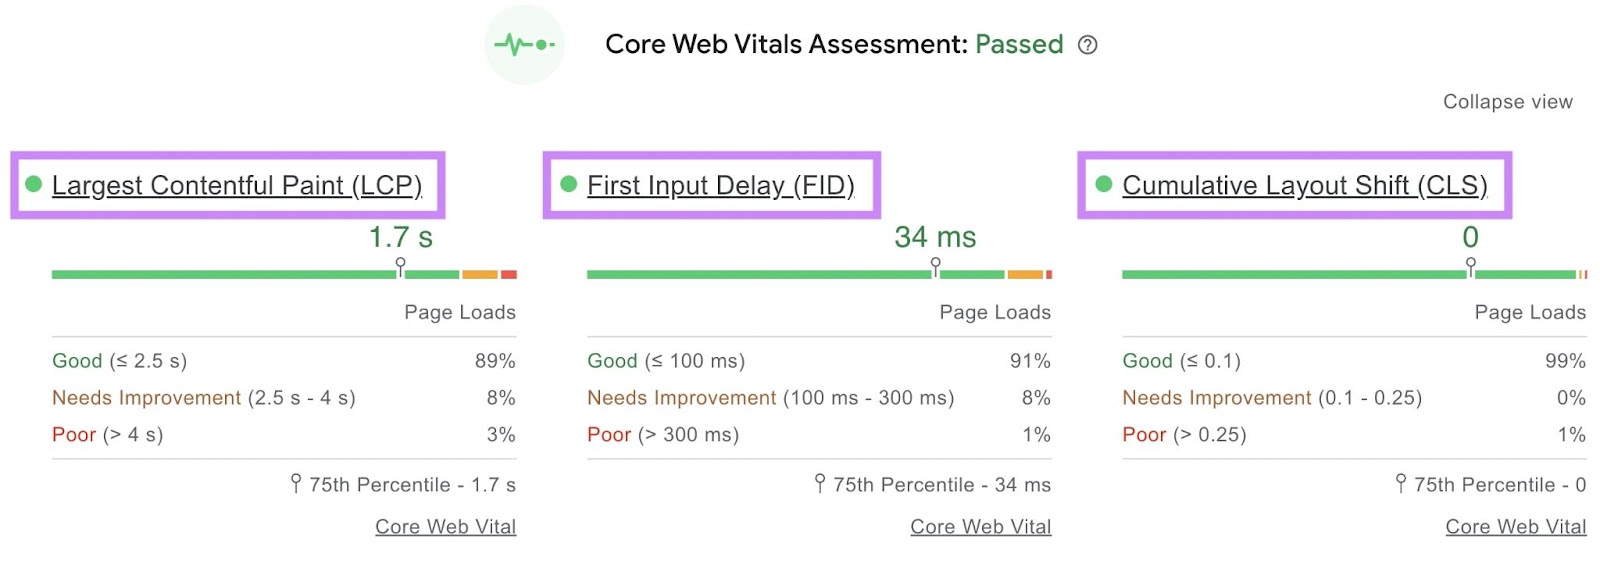 Core Web Vitals assessment report